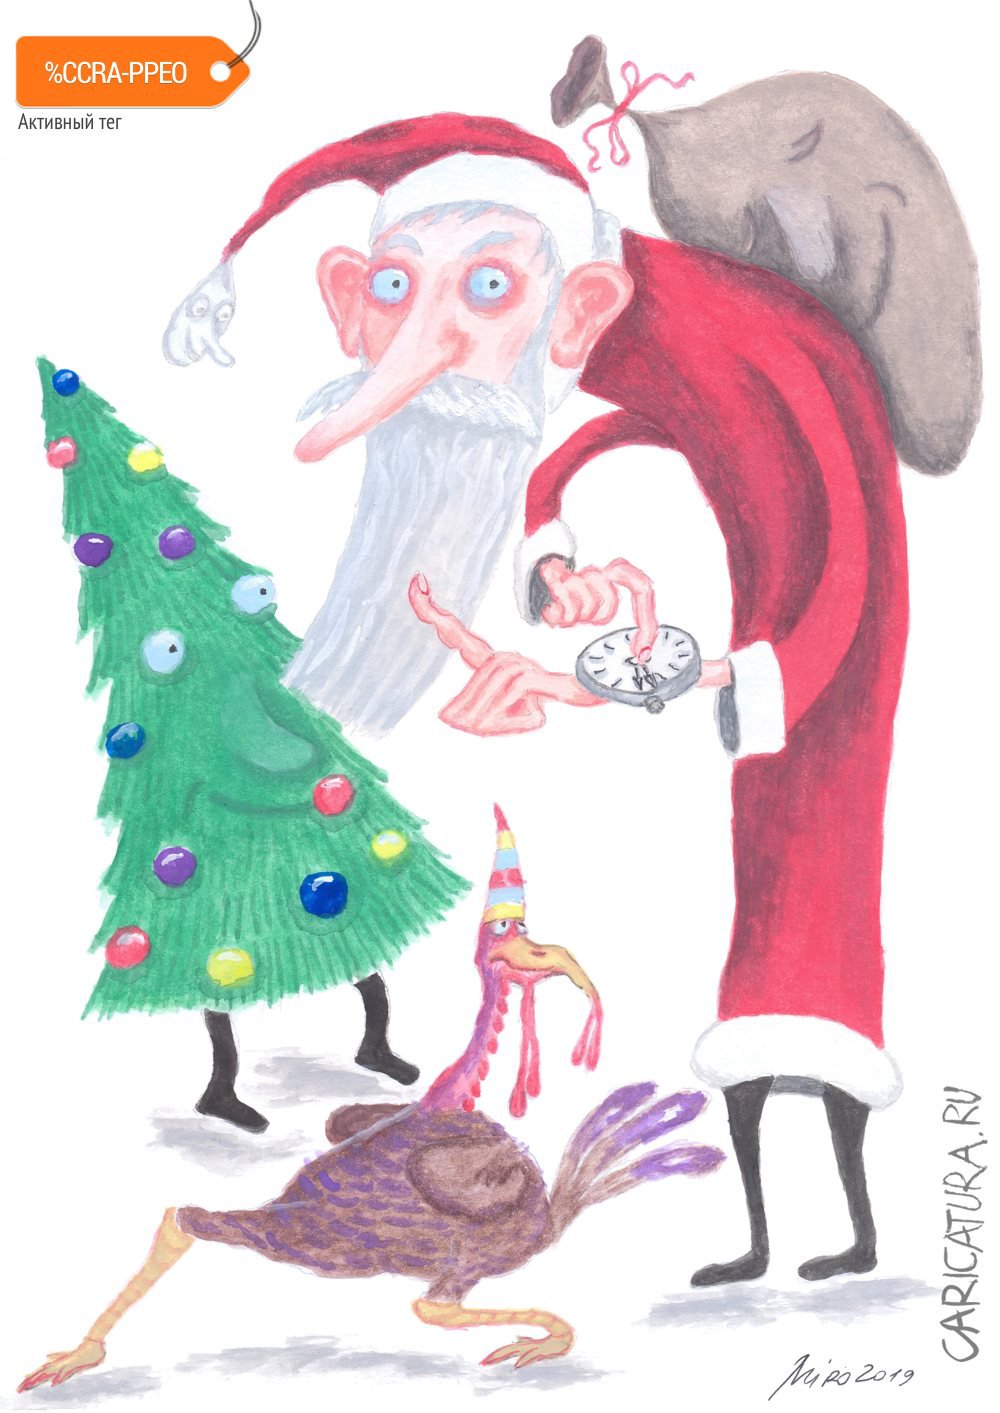 Карикатура "Санта Клаус предупреждает о приближении Нового год", Игорь Мирошниченко